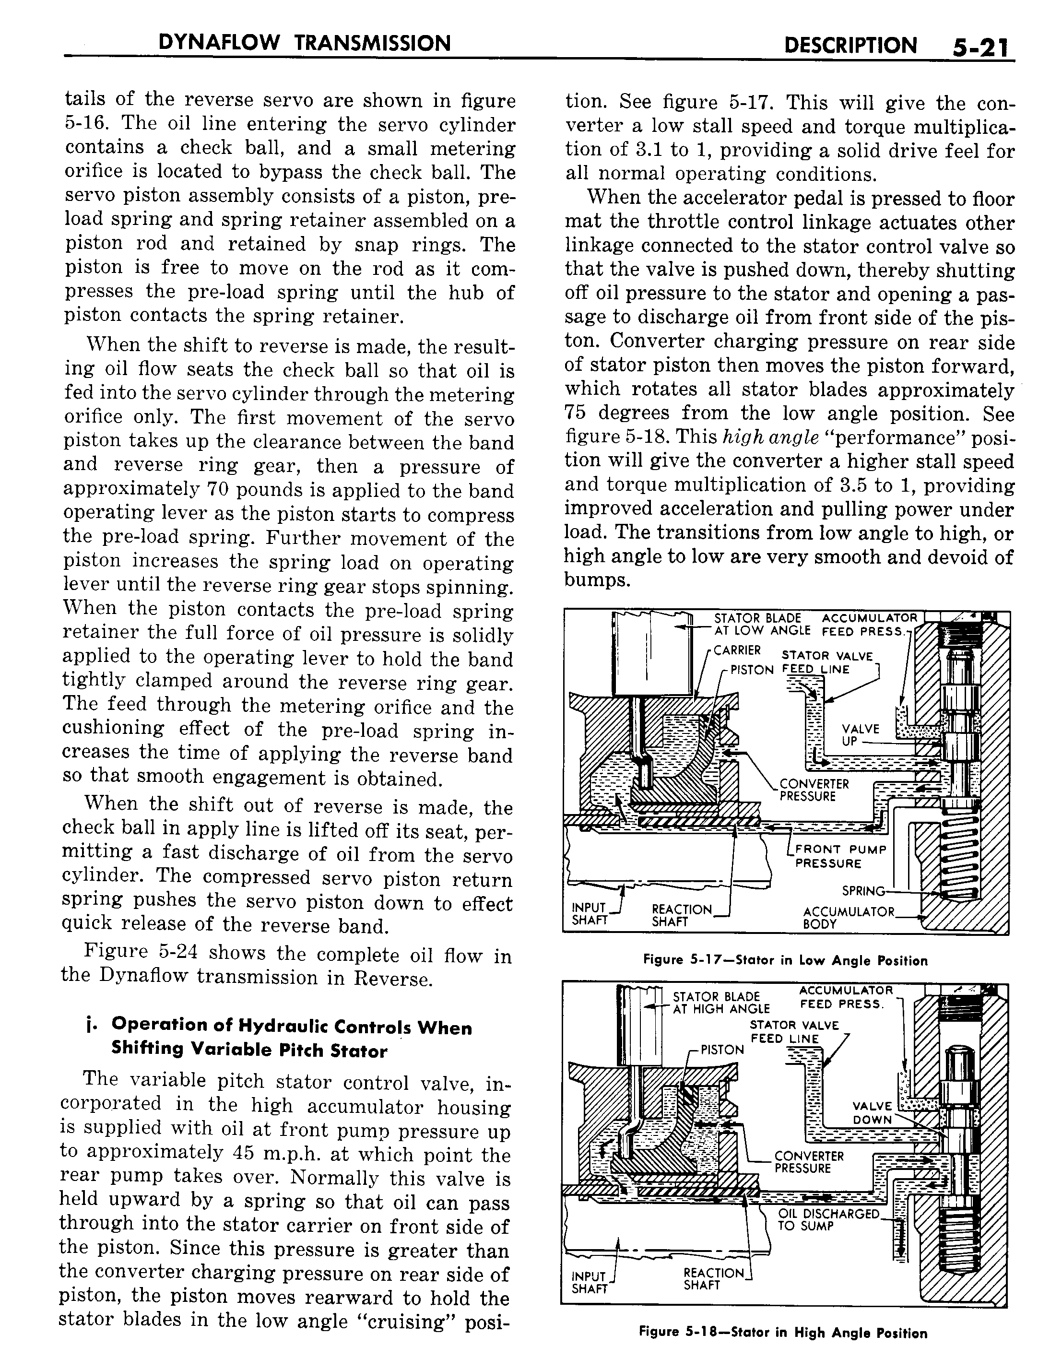 n_06 1957 Buick Shop Manual - Dynaflow-021-021.jpg